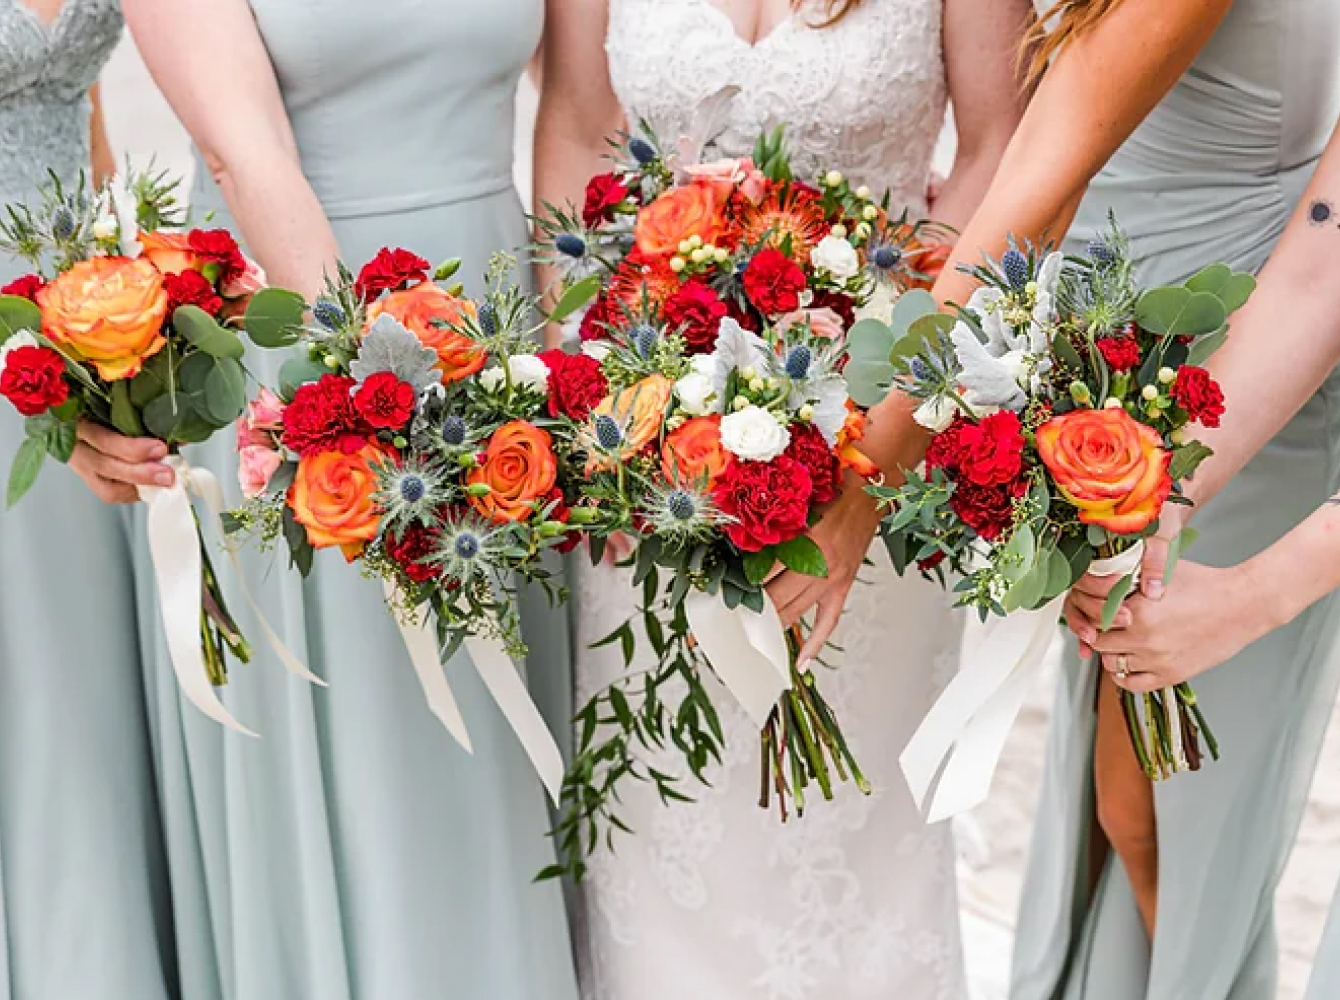 5 Wedding Bouquet Trends